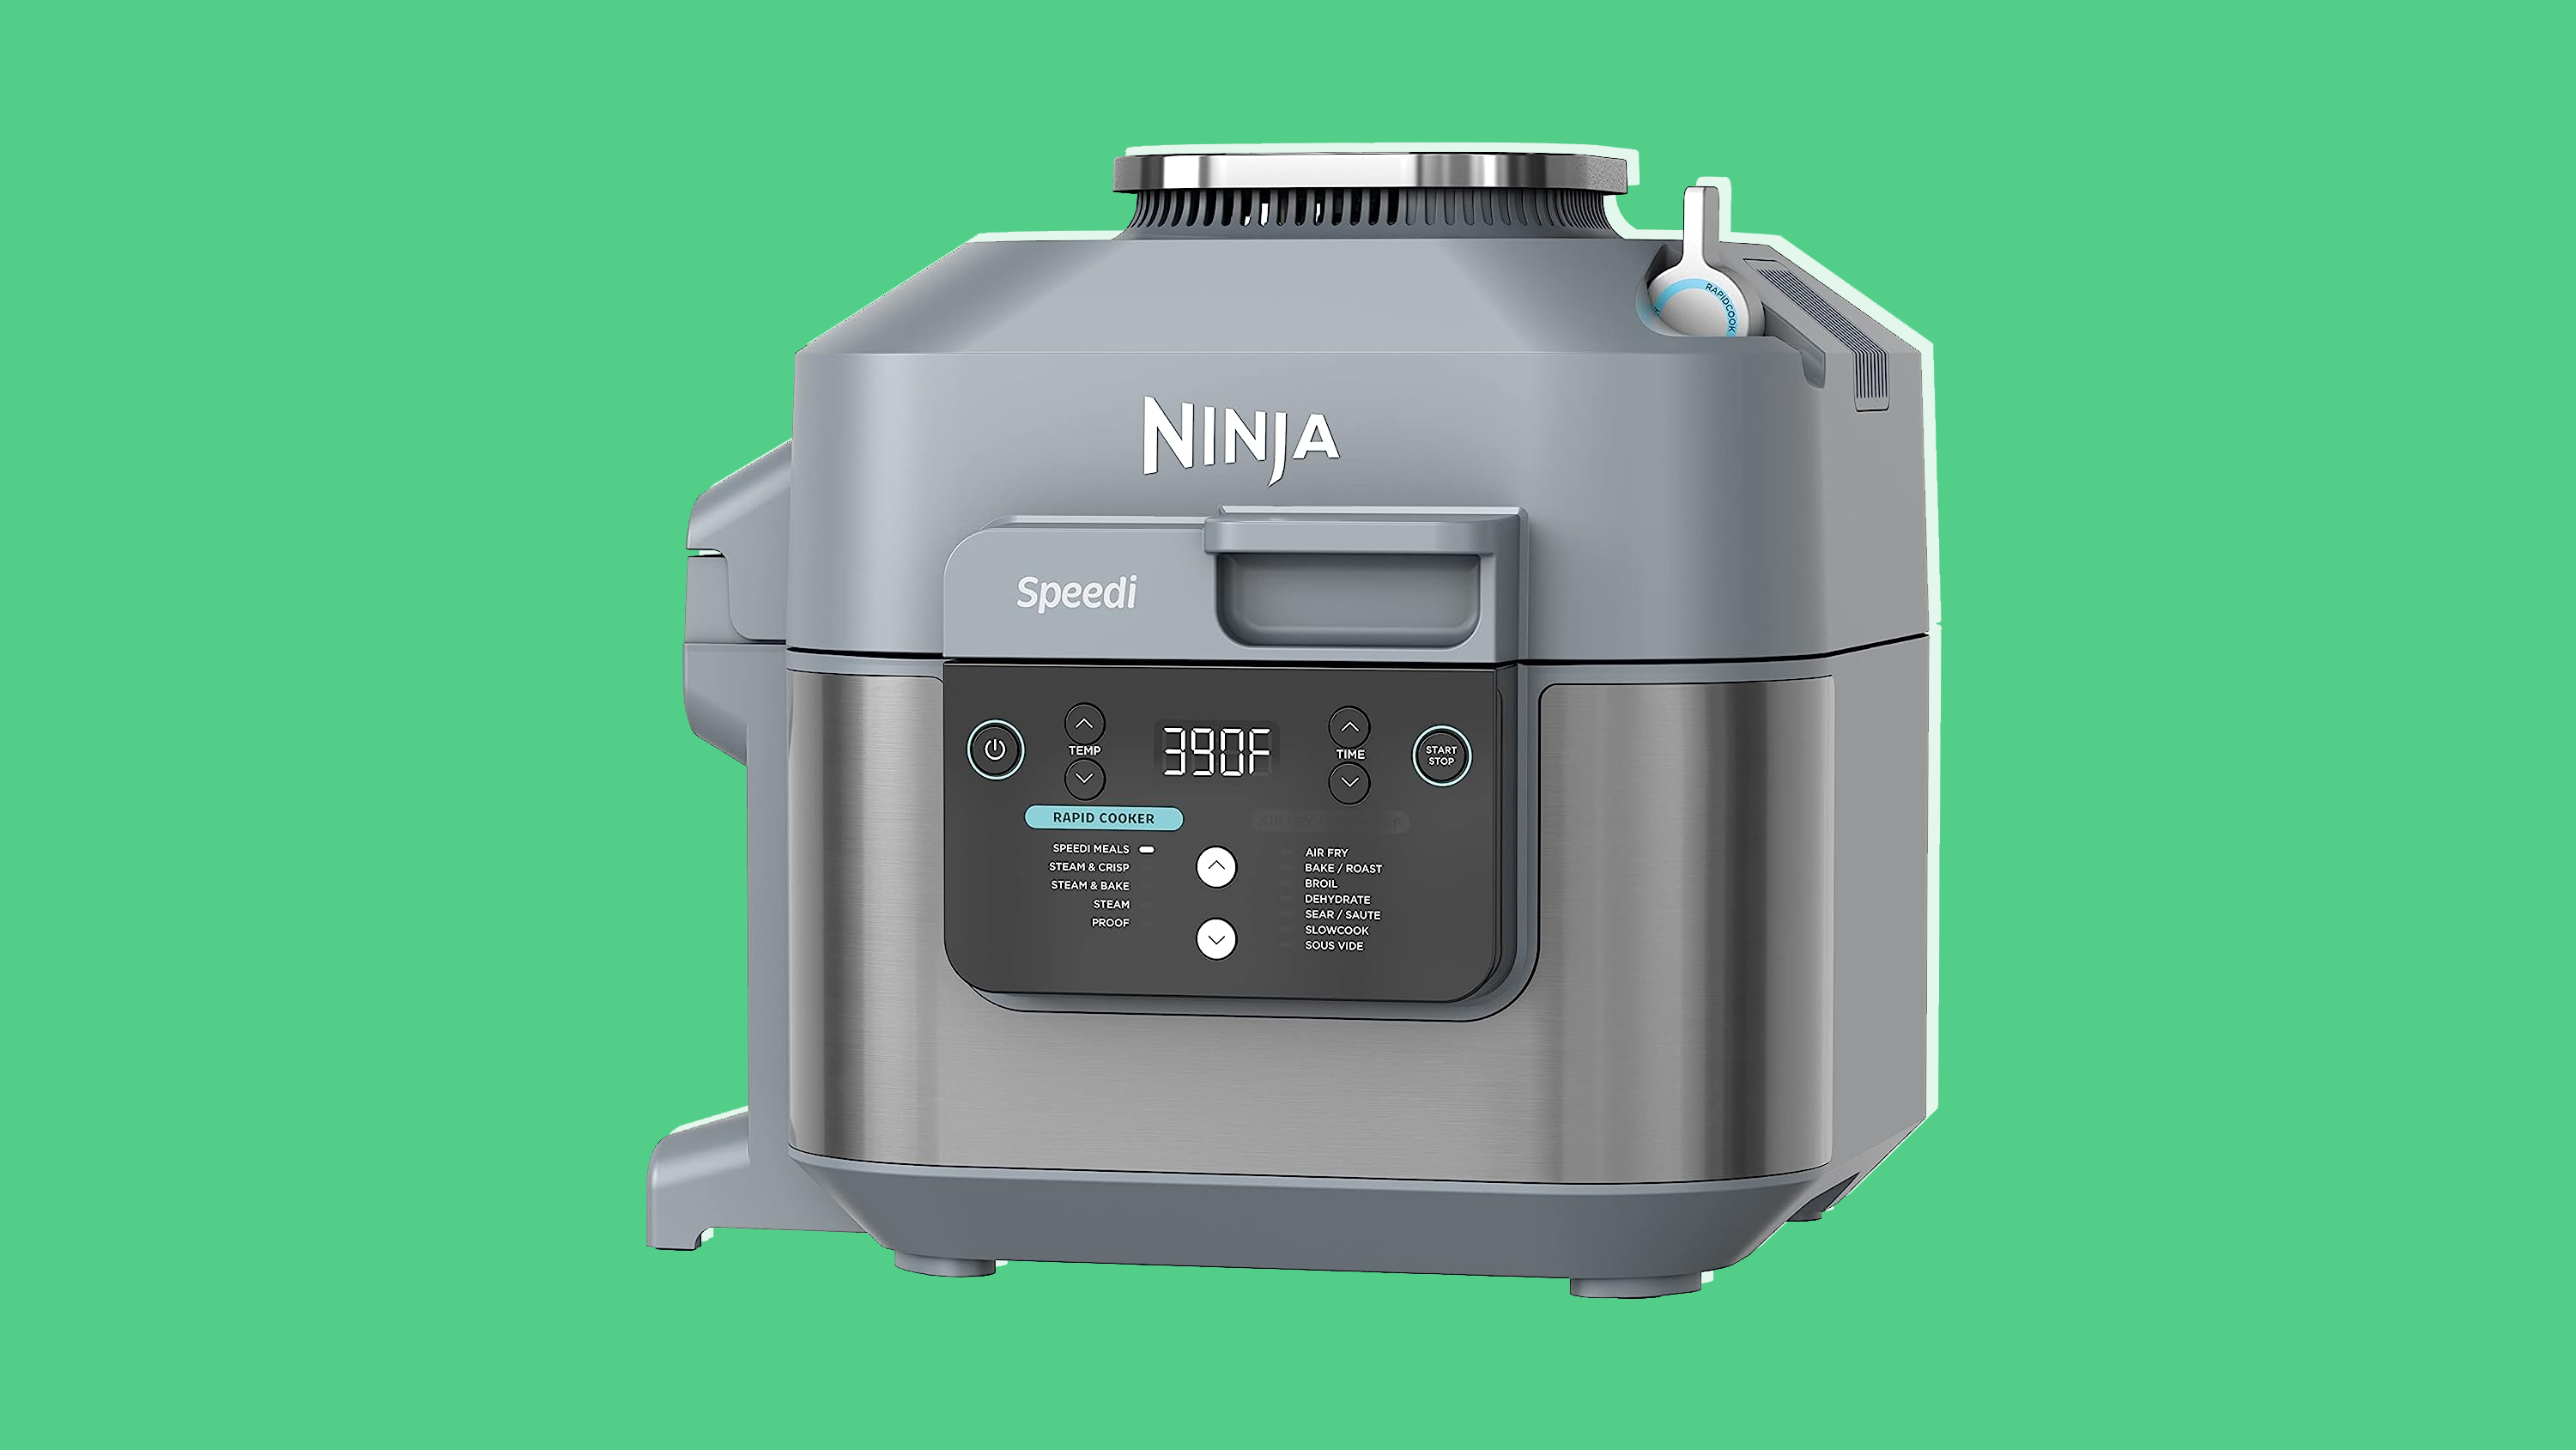 Best gifts for men: Ninja Speedi Rapid Cooker and Air Fryer